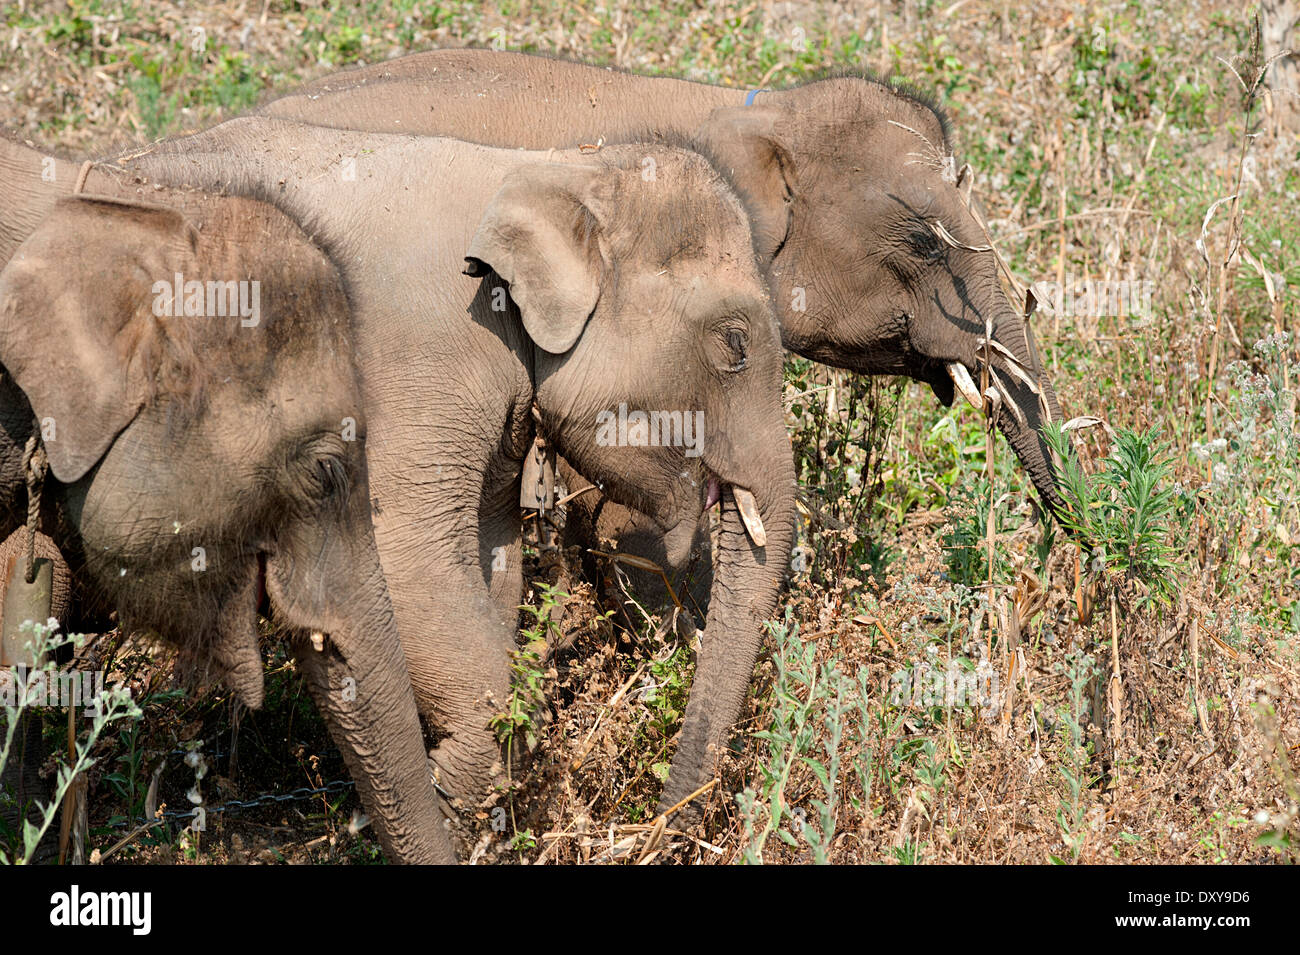 Trois jeunes éléphants jouissent de la liberté de flâner et manger dans le champ. Huay Pakoot, nord de la Thaïlande. Banque D'Images